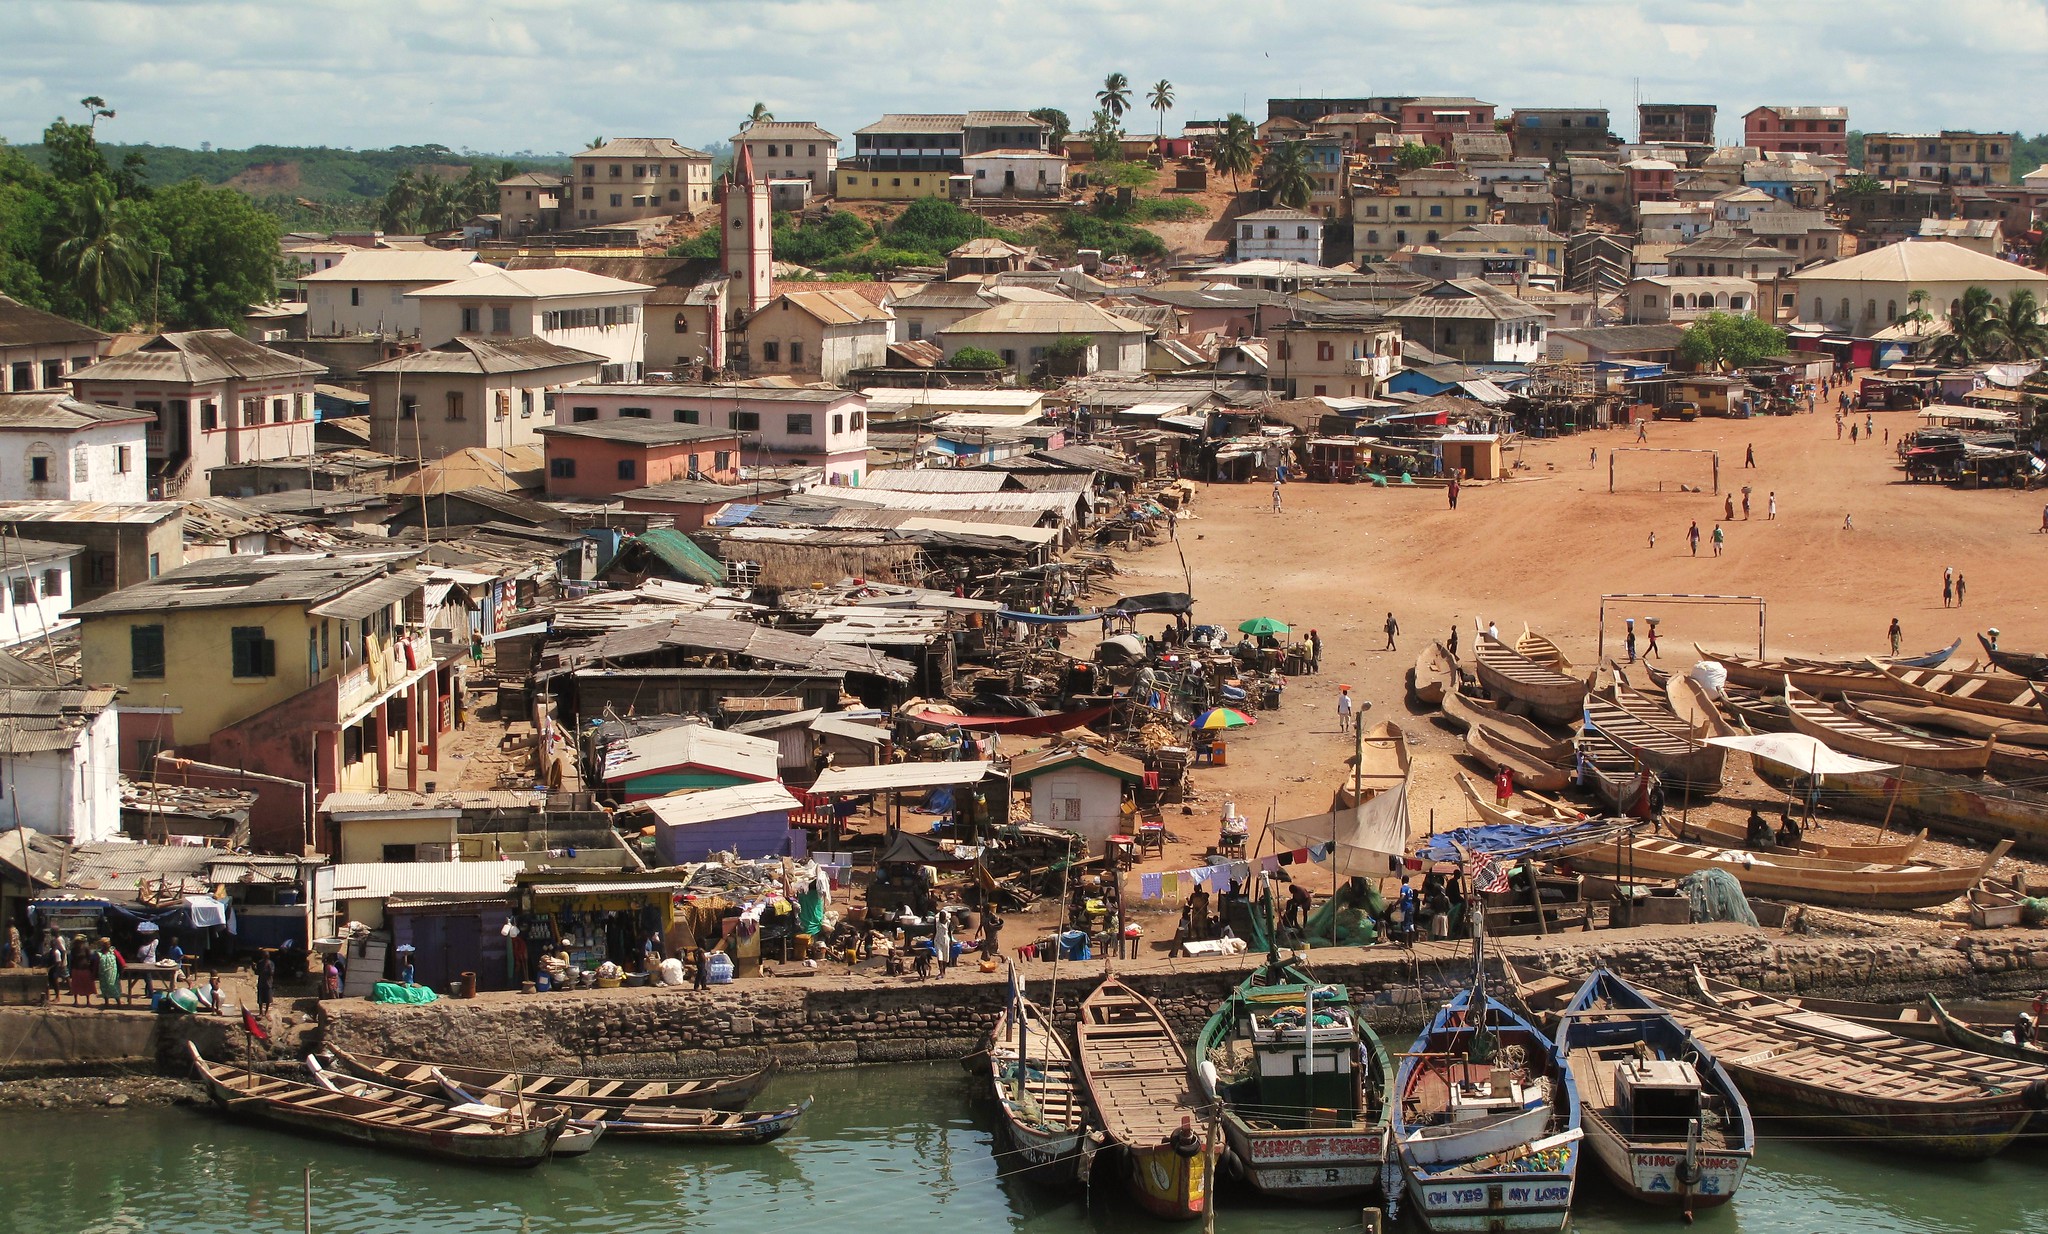 Central Elmina, Ghana